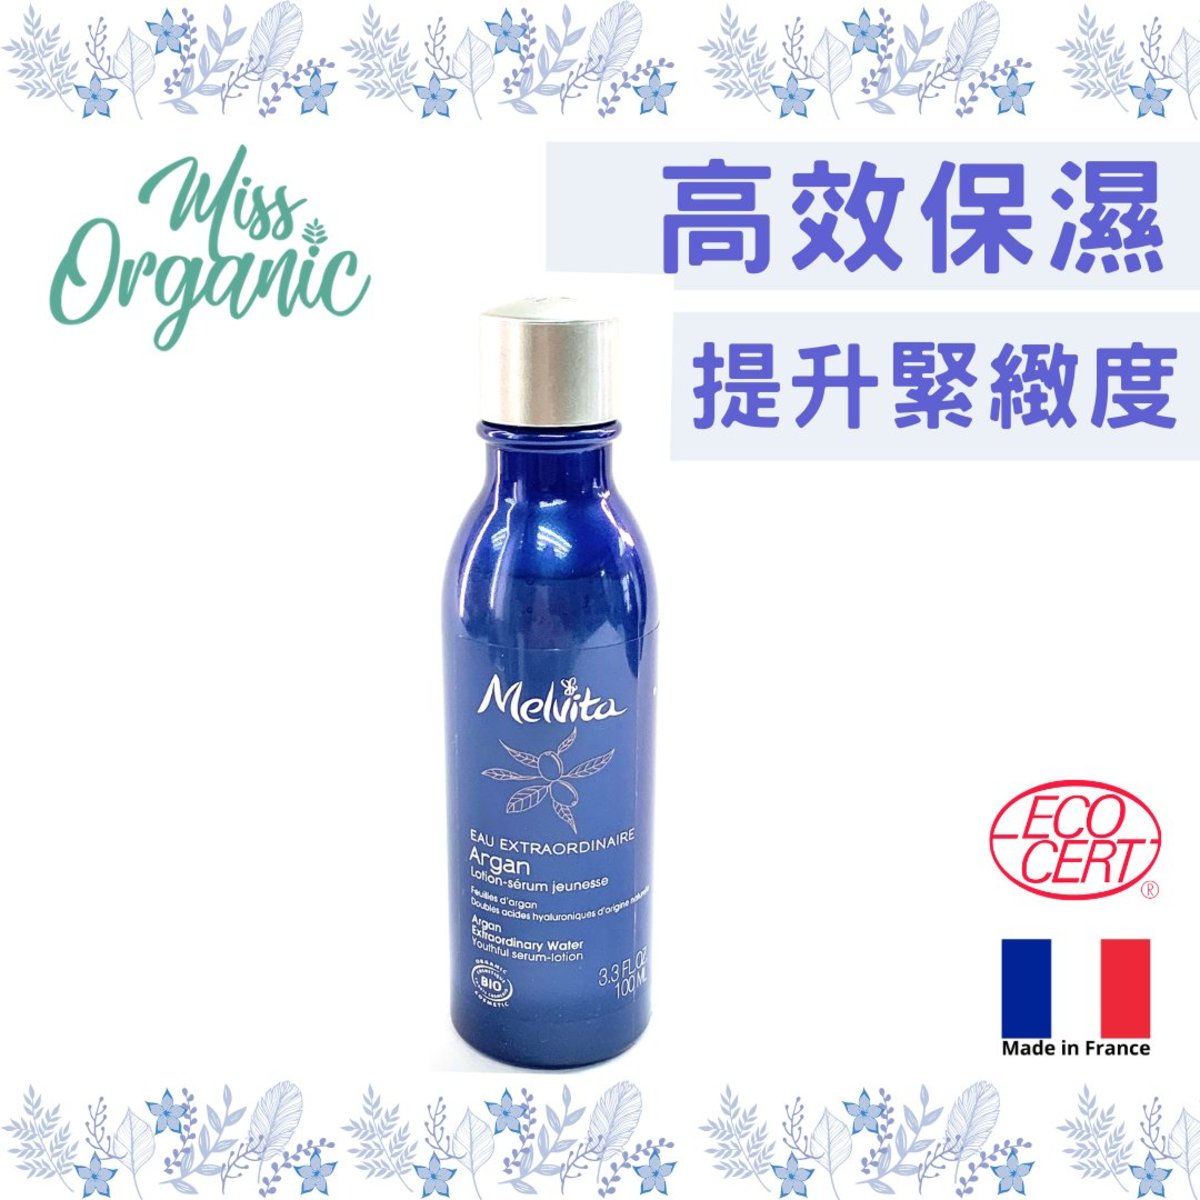 Organic Argan Extraordinary Water 100ml[parallel import] (face skin tightening toner/mist)